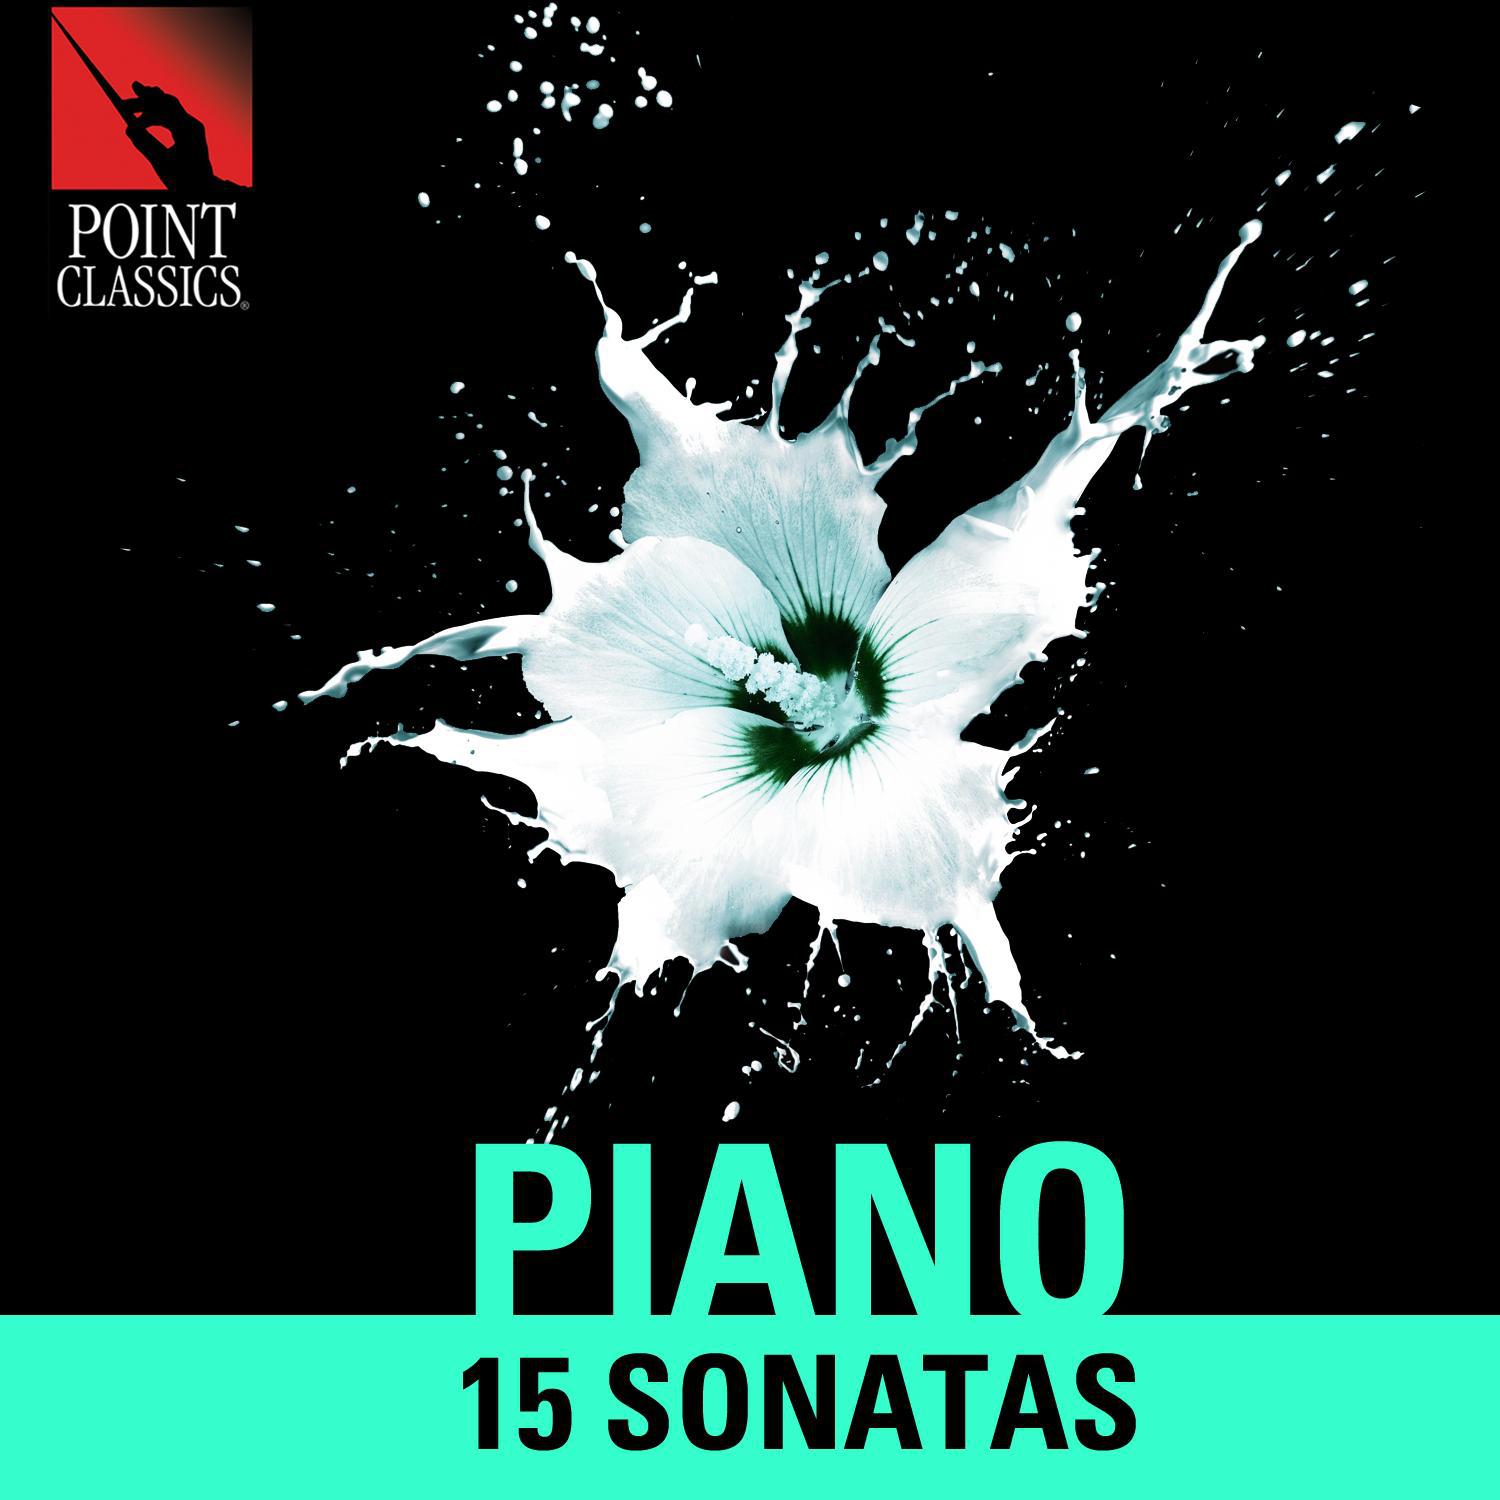 Piano Sonata No. 11 in A Major, K. 331 "Alla Turca": II. Menuetto - Trio